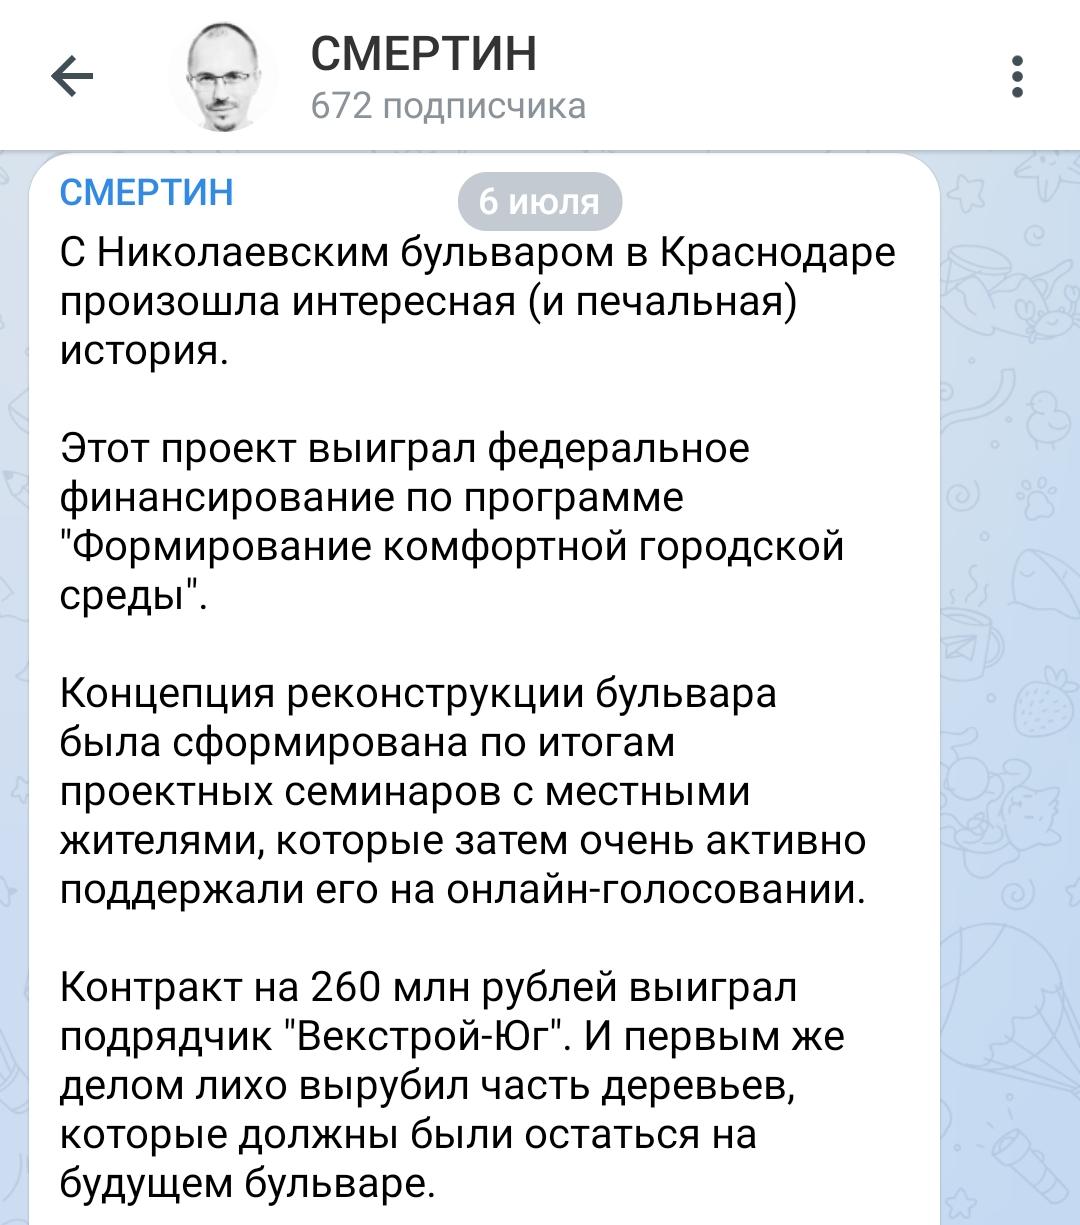 Соцсети: подрядчик Николаевского бульвара в Краснодаре опроверг незаконную рубку